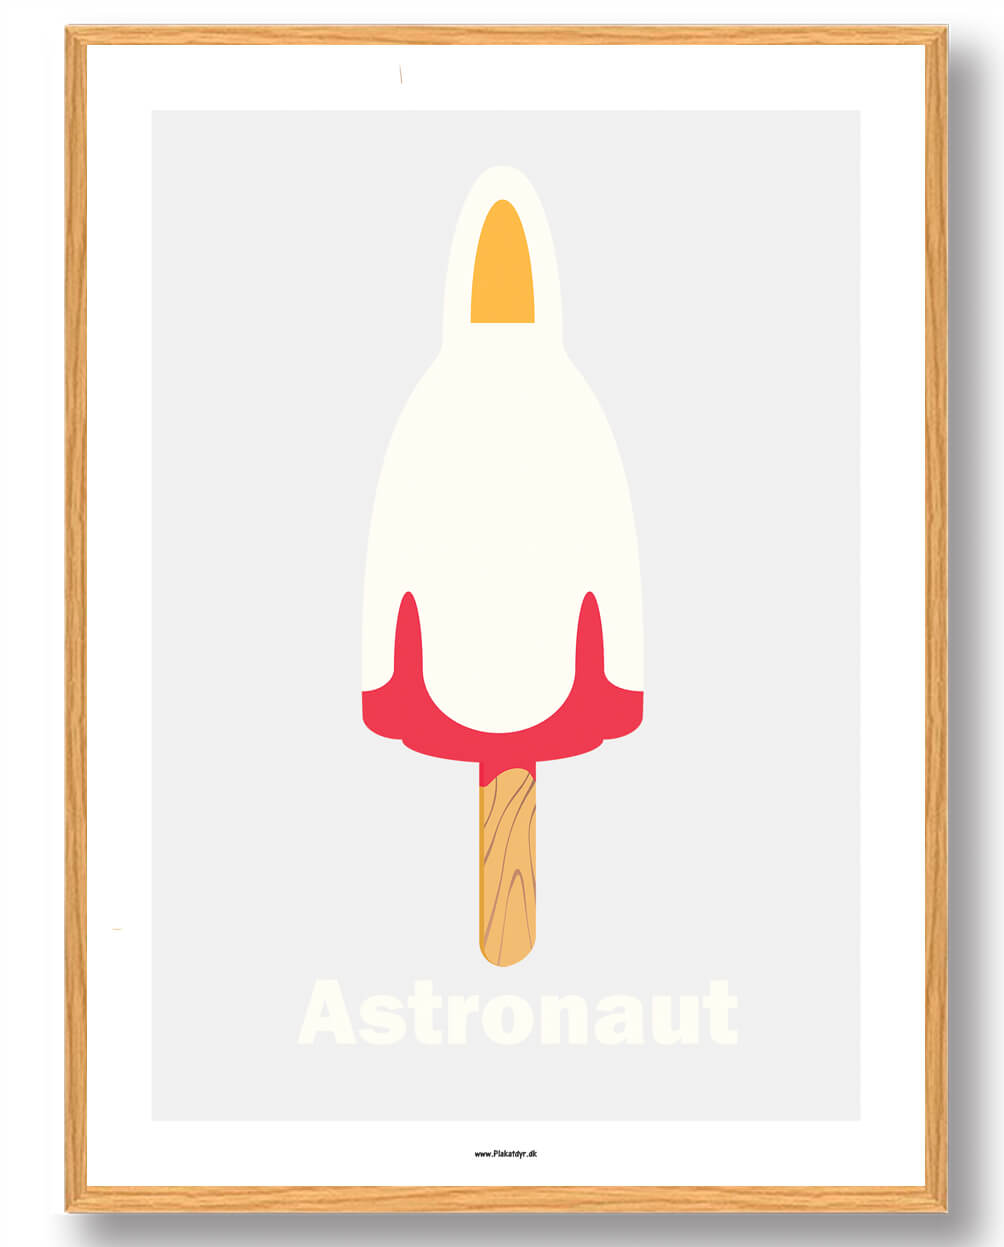 Astronaut is - plakat